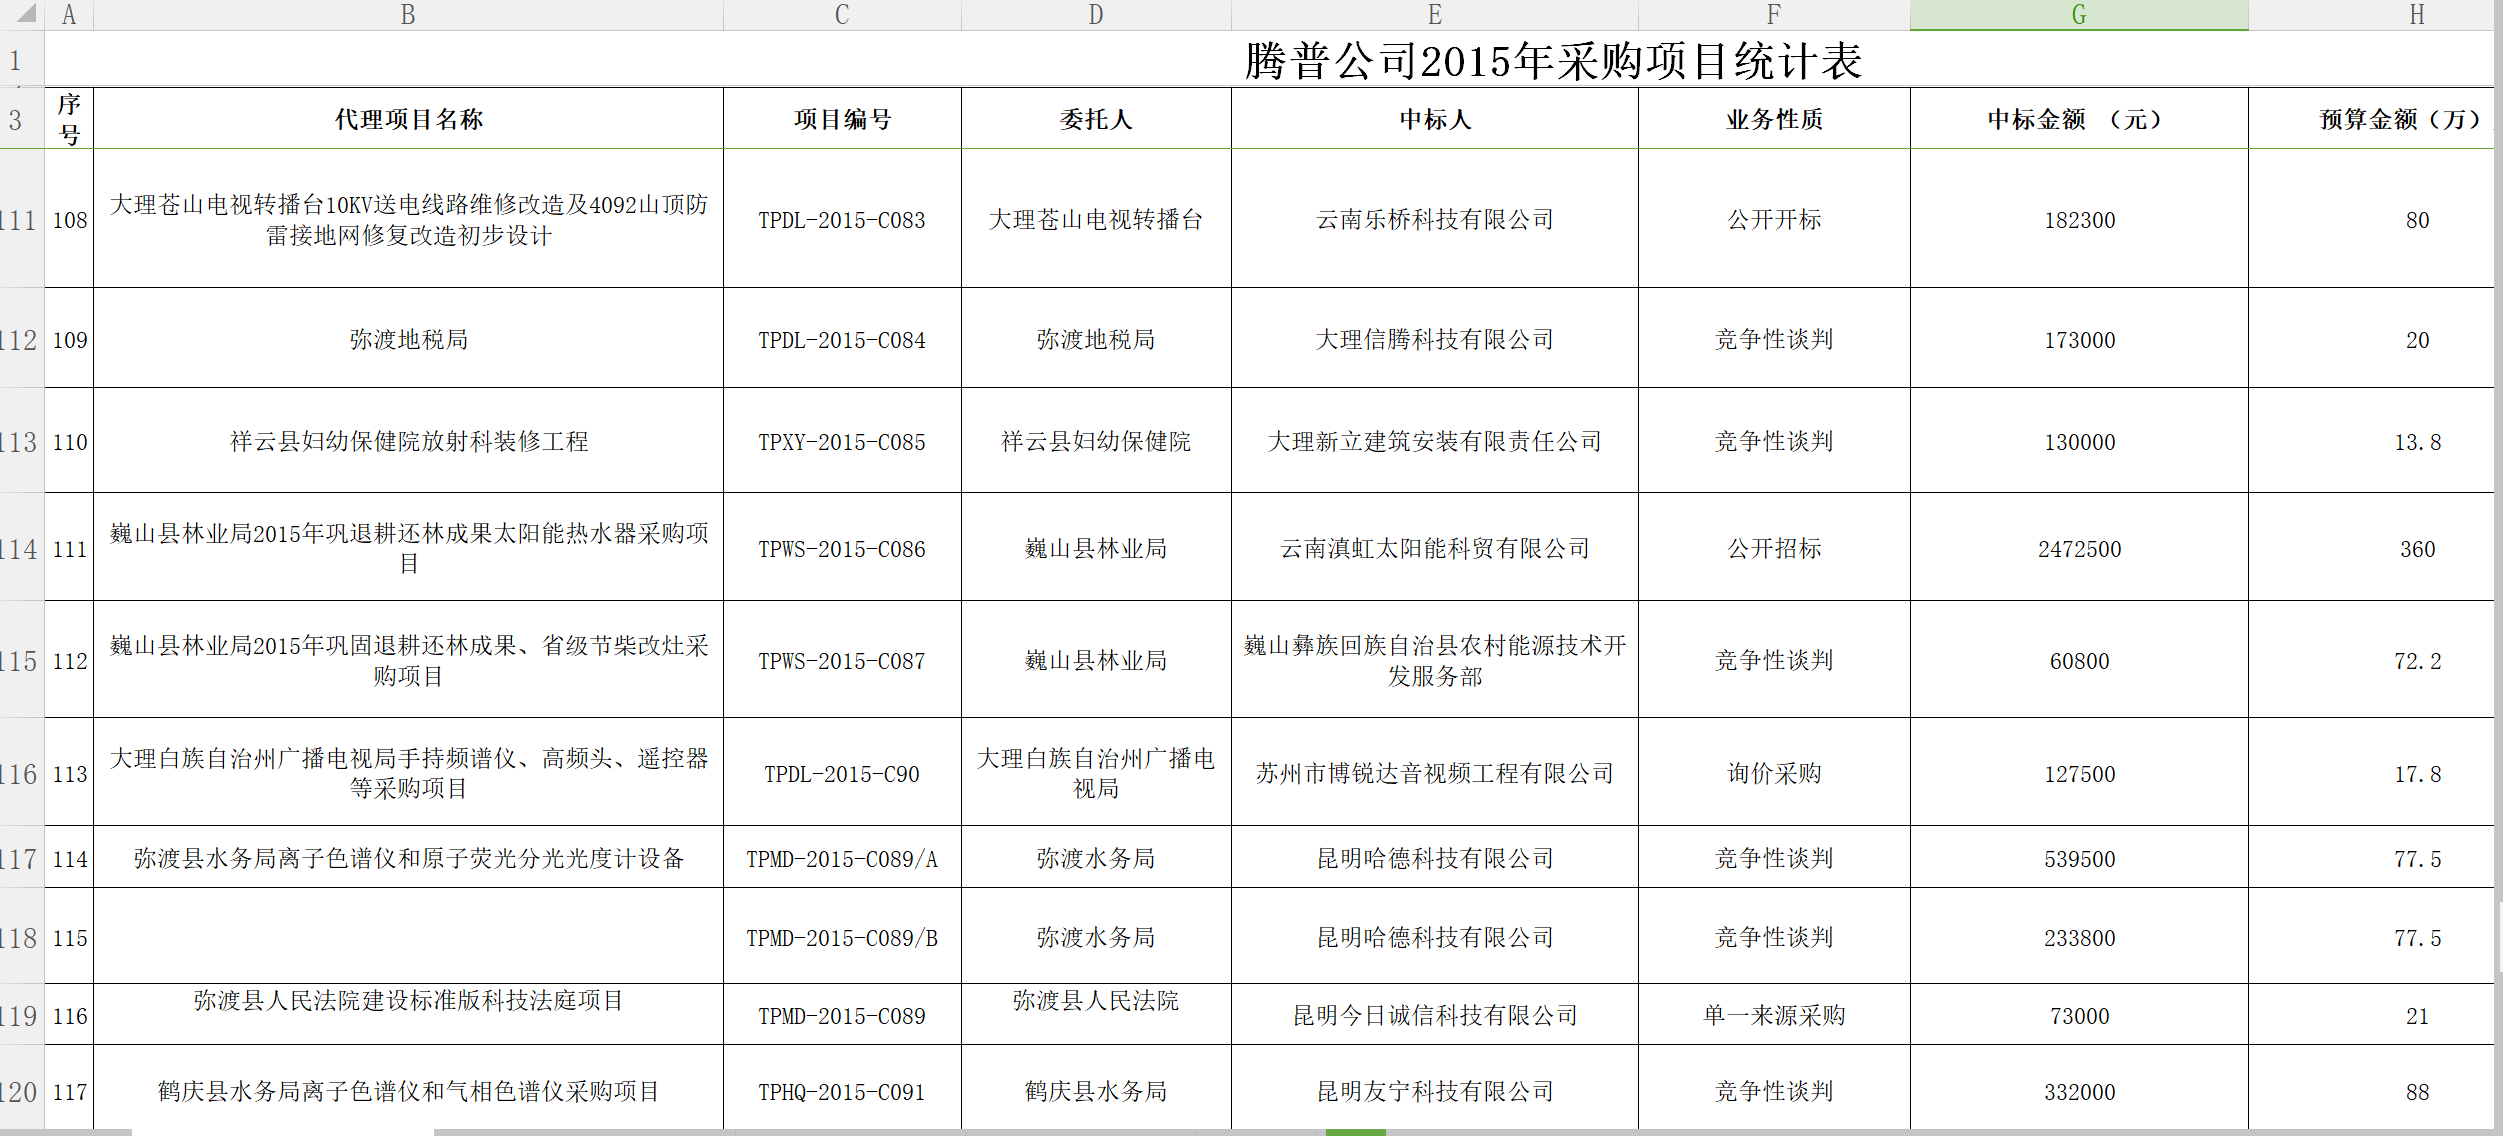 QQ截图腾普公司2015采购统计表11.png